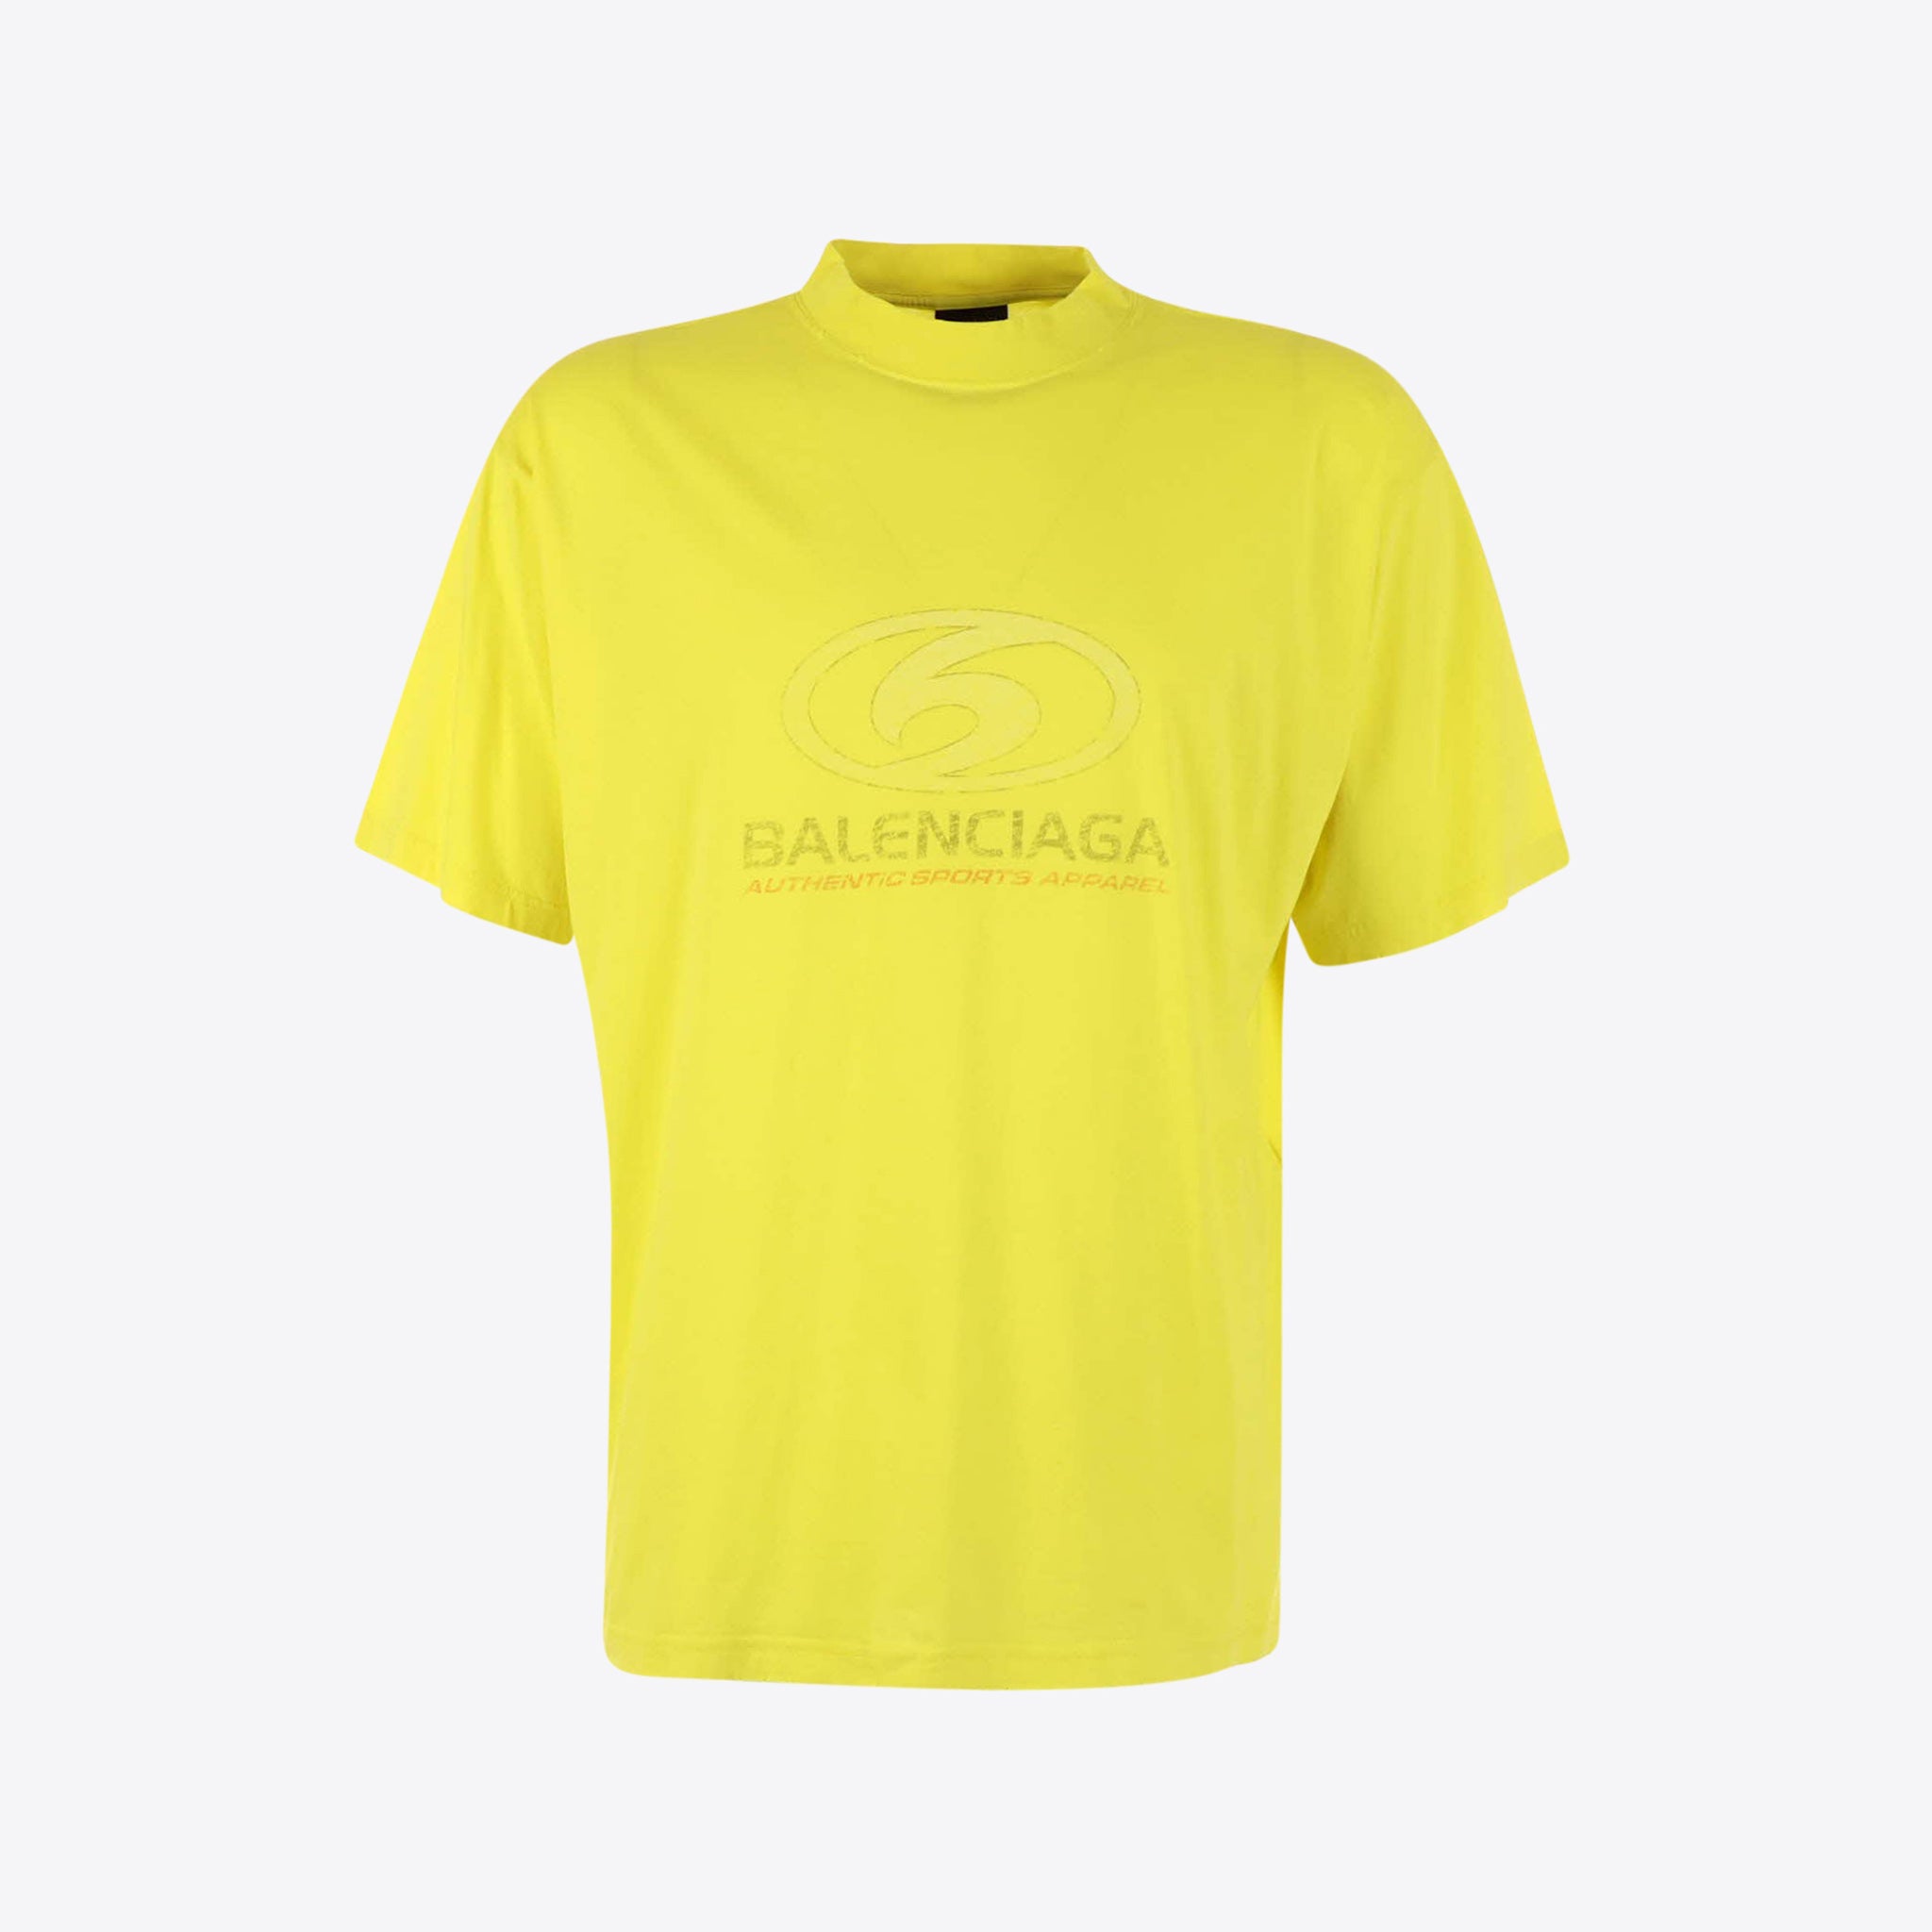 Balenciaga T-shirt Geel Surf